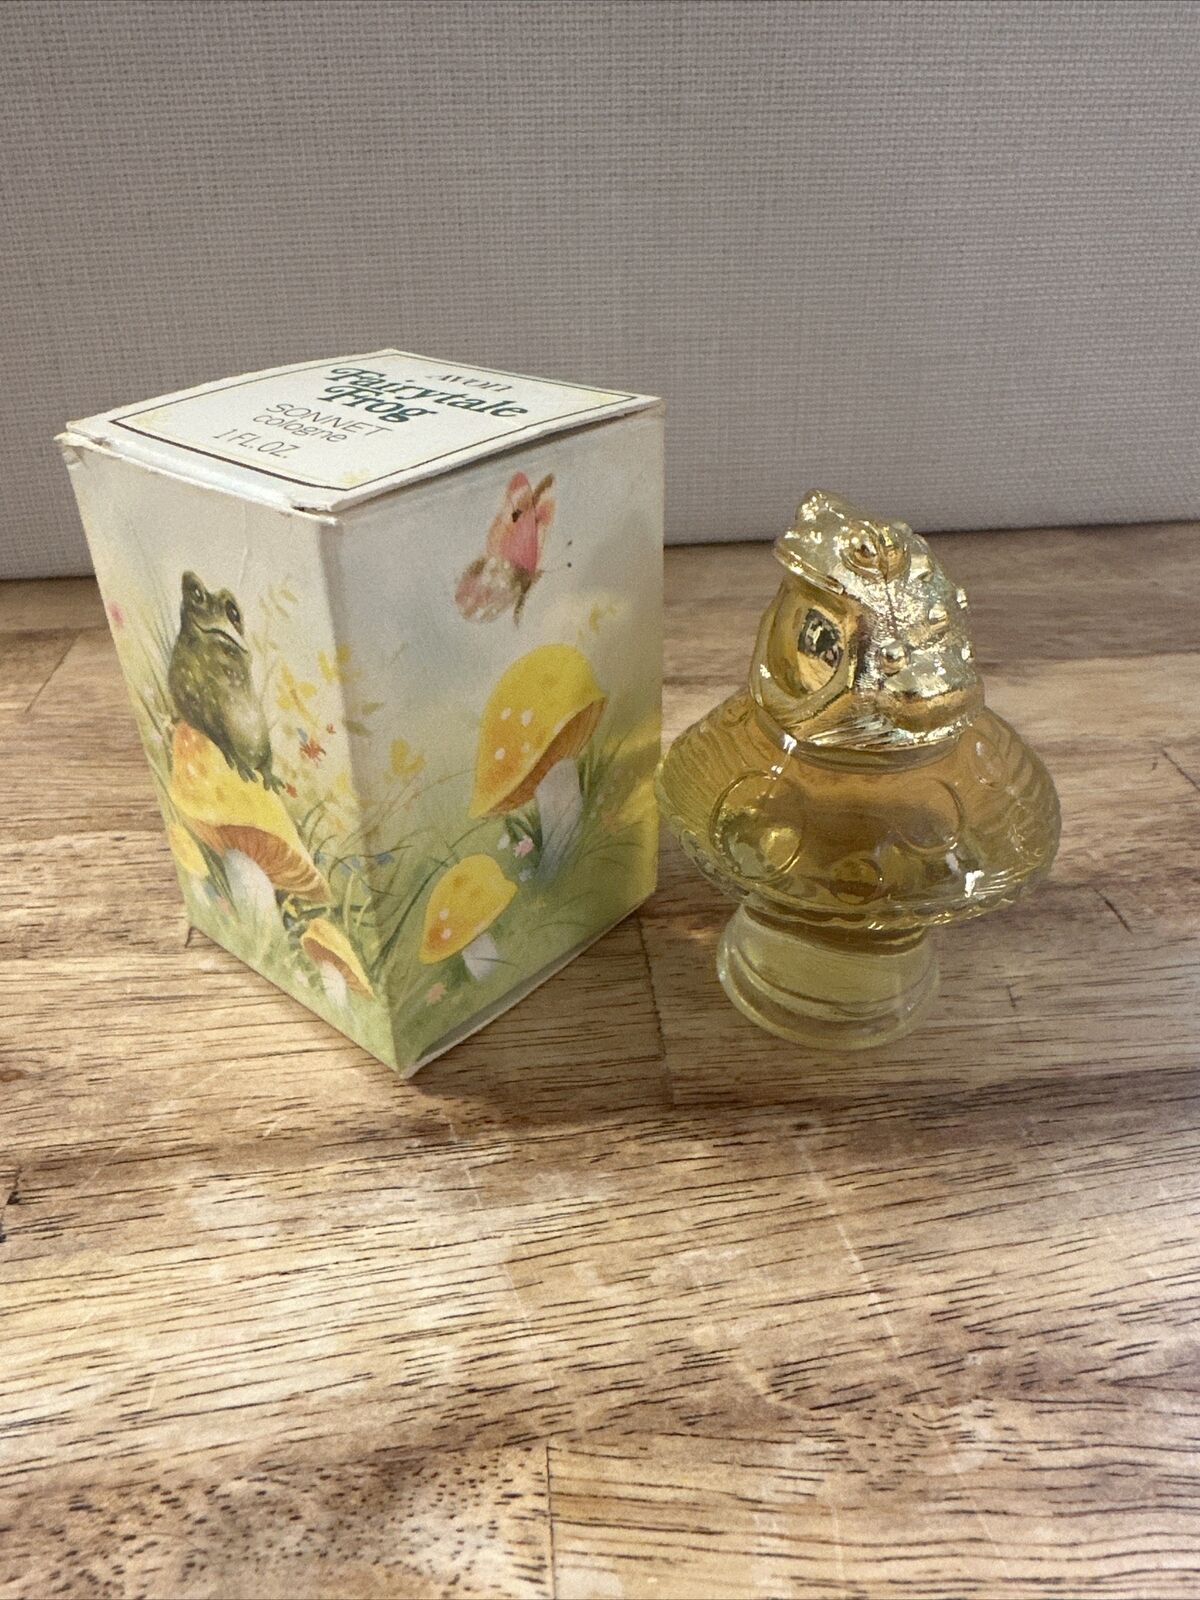 NEW Avon Fairytale Frog Sonnet Cologne 1 Fluid Ounce Full Bottle